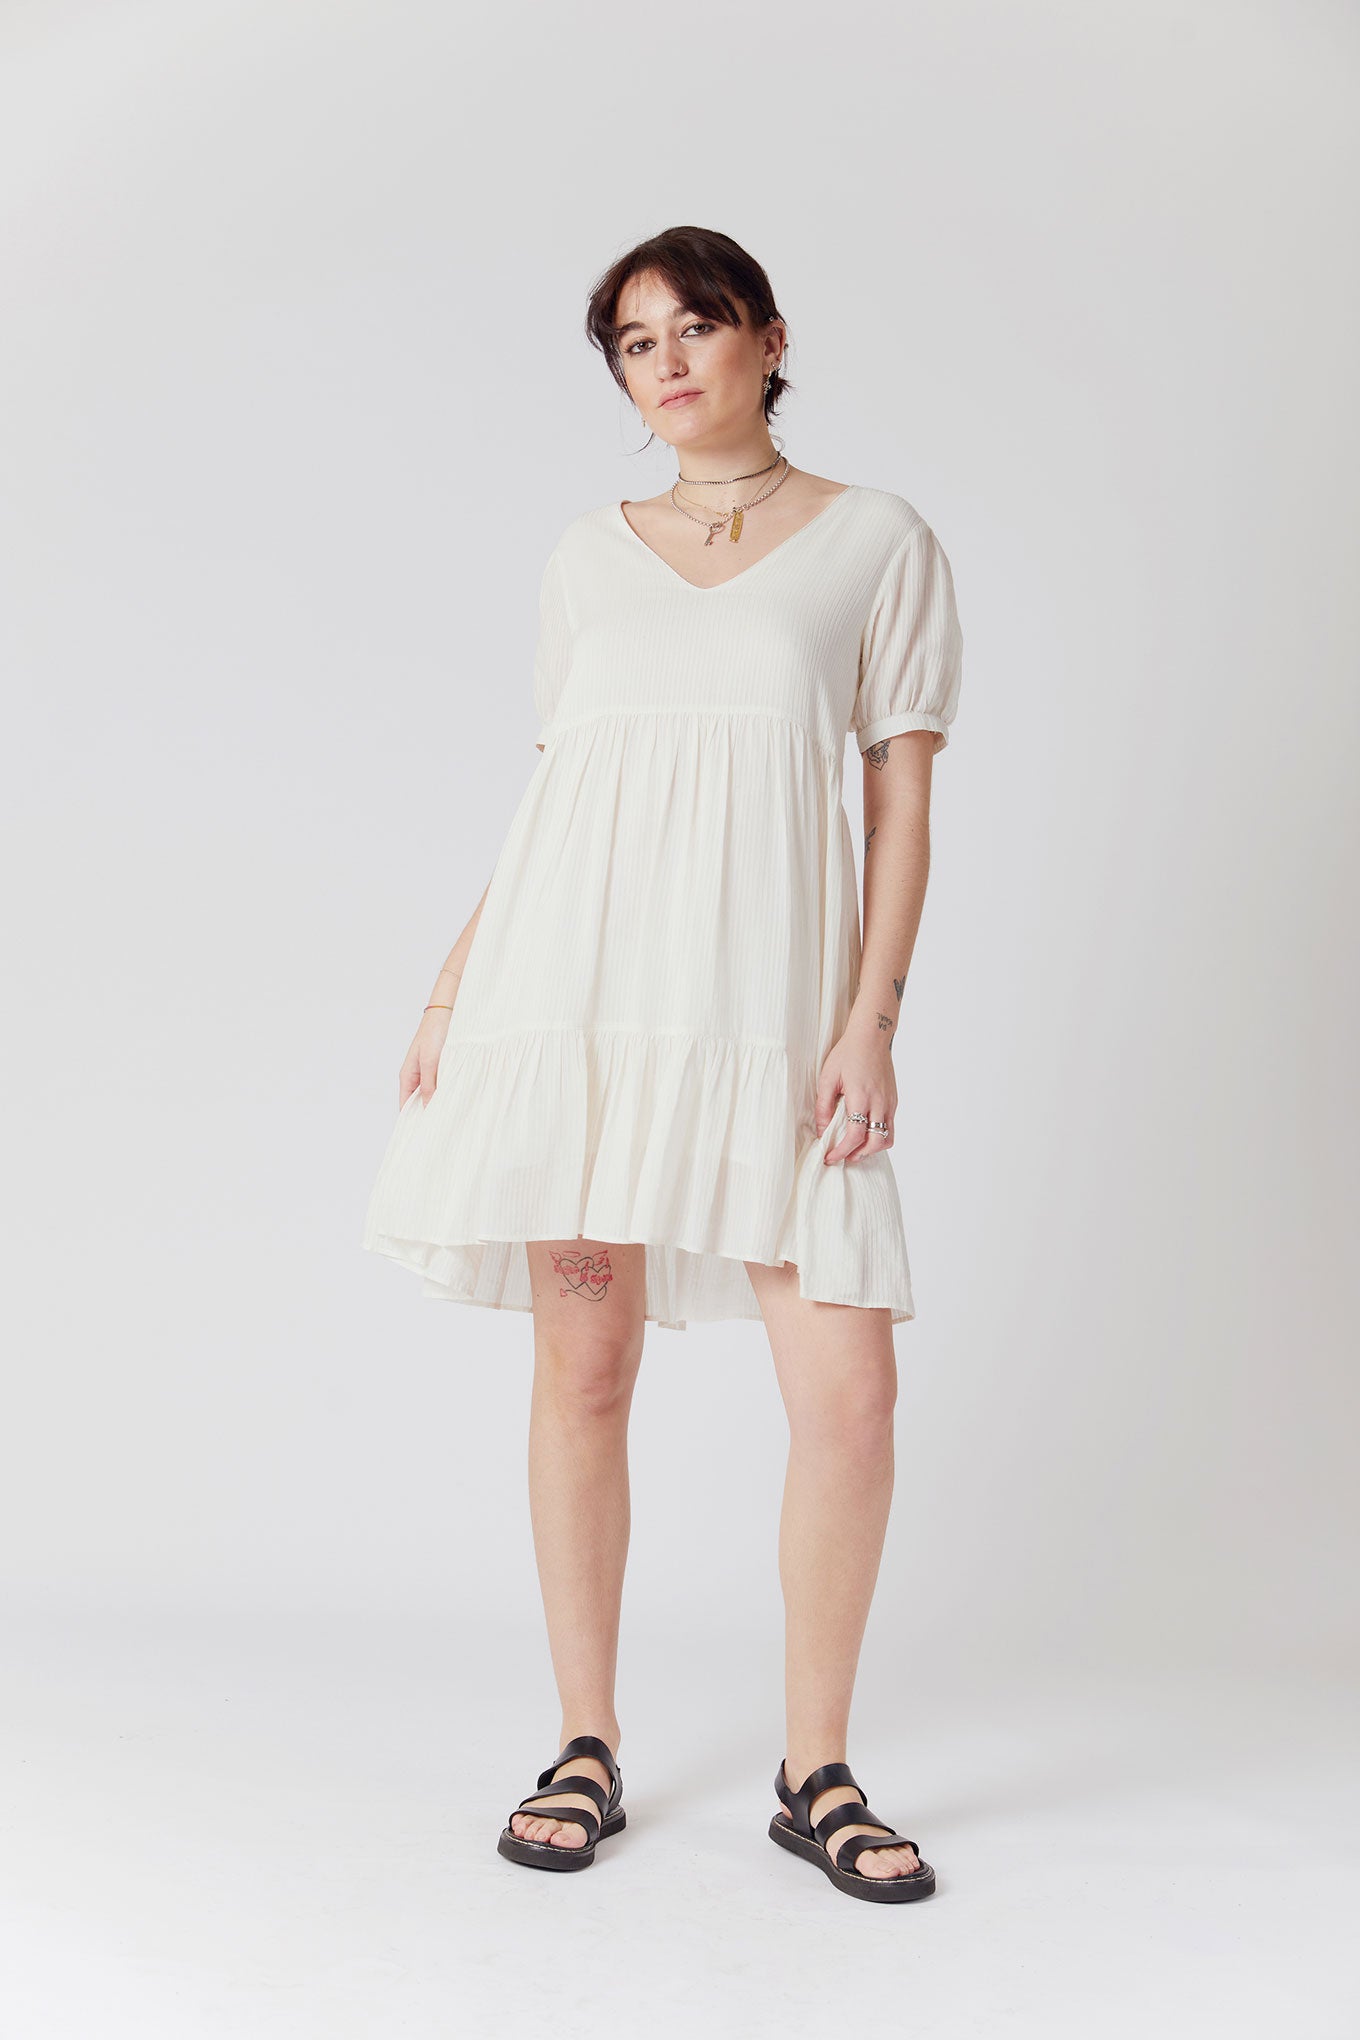 SKY Corn Fabric Mini Dress - Off White, SIZE 4 / UK 14 / EUR 42